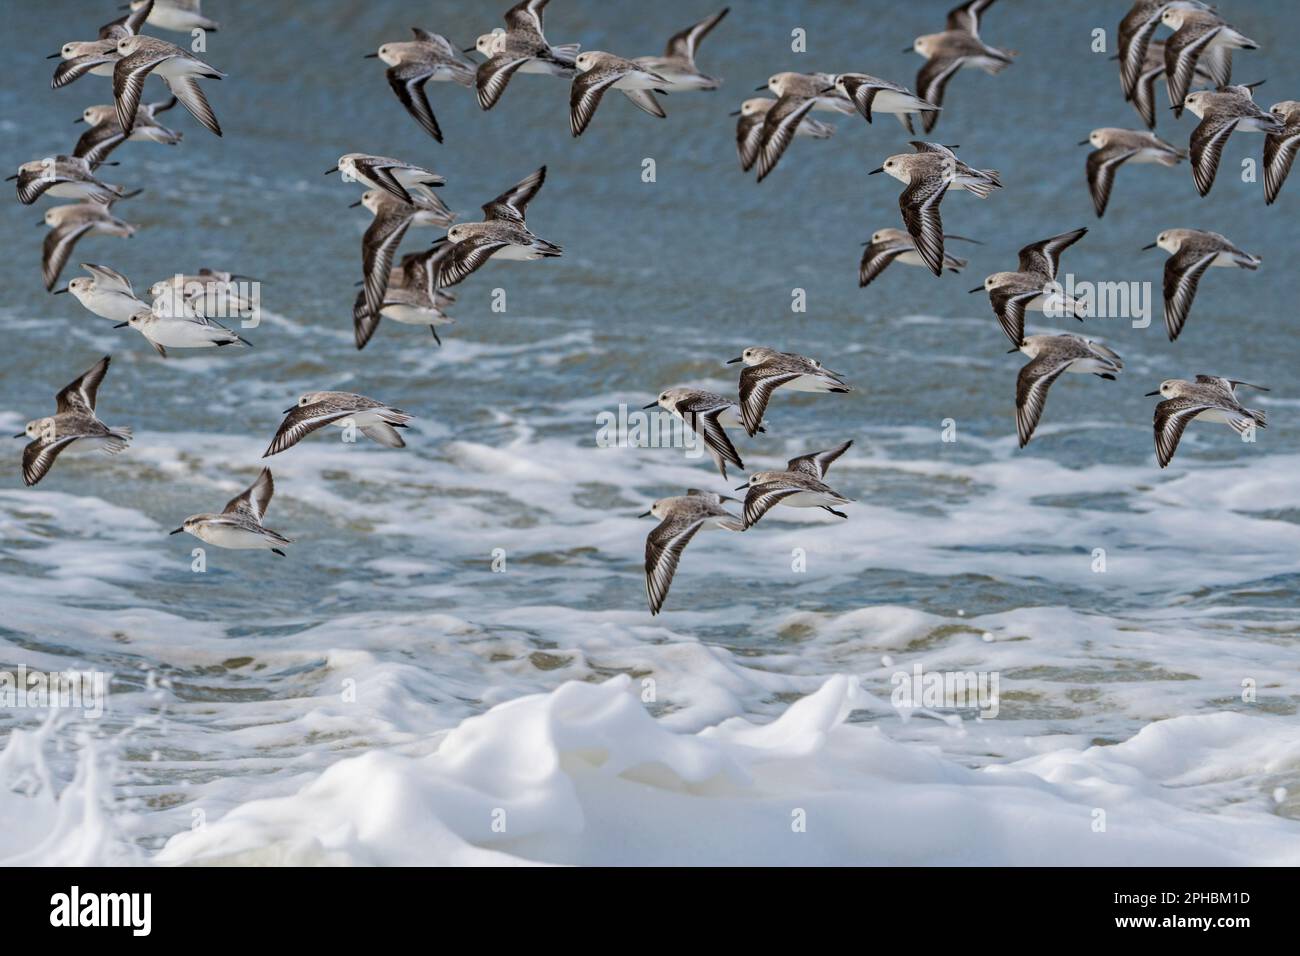 Gregge di pascoli (Calidris alba) uccelli migratori che volano in un piumaggio non riproduttivo in una giornata ventosa durante la tempesta invernale tardiva all'inizio della primavera Foto Stock